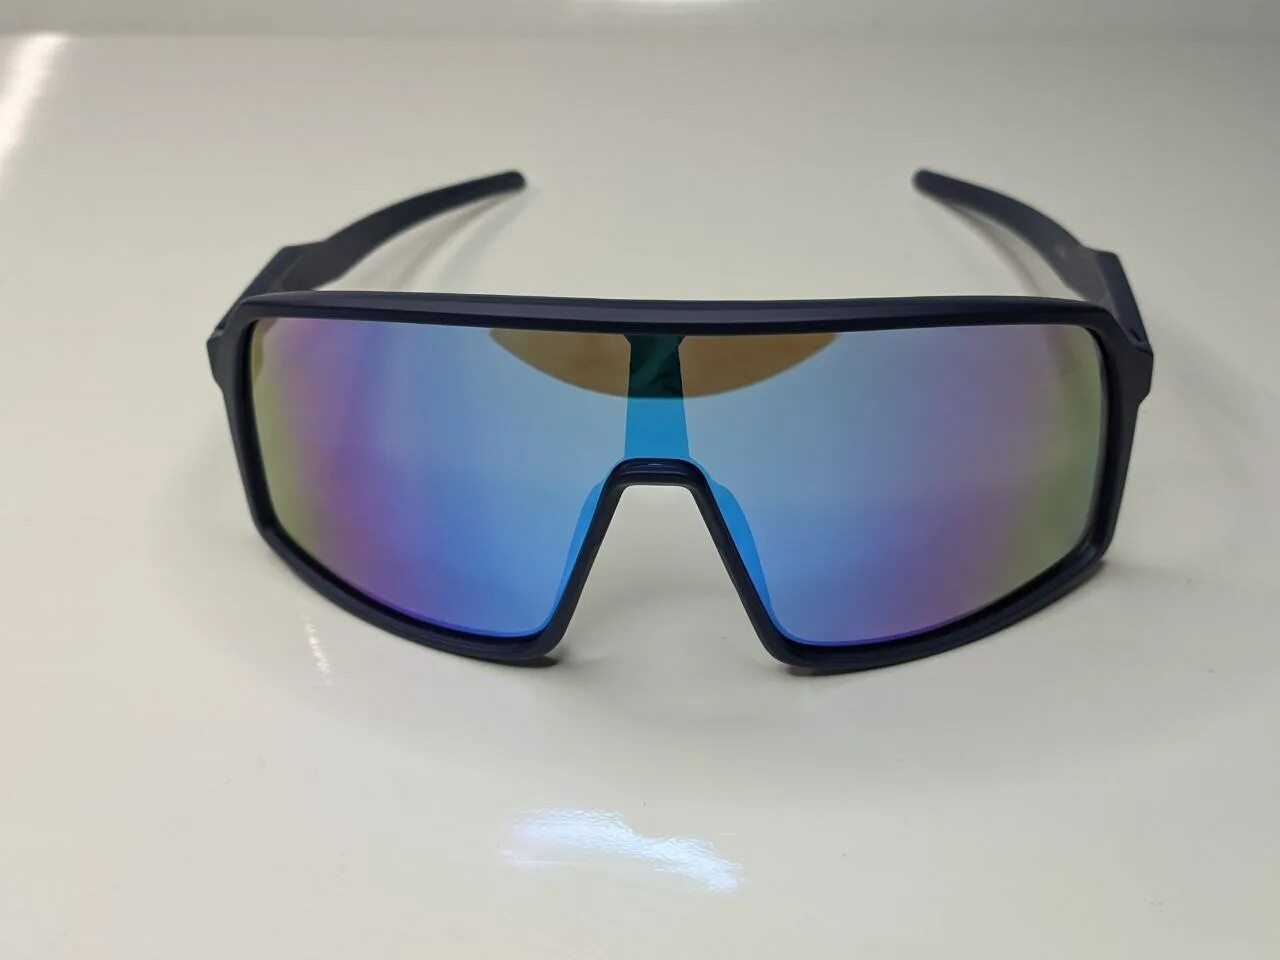 Широкие очки солнцезащитные мужские. Очки солнцезащитные мужские спортивные. Солнцезащитные очки для волейбола. Очки солнечные мужские спортивные широкие. Купишь широкие очки